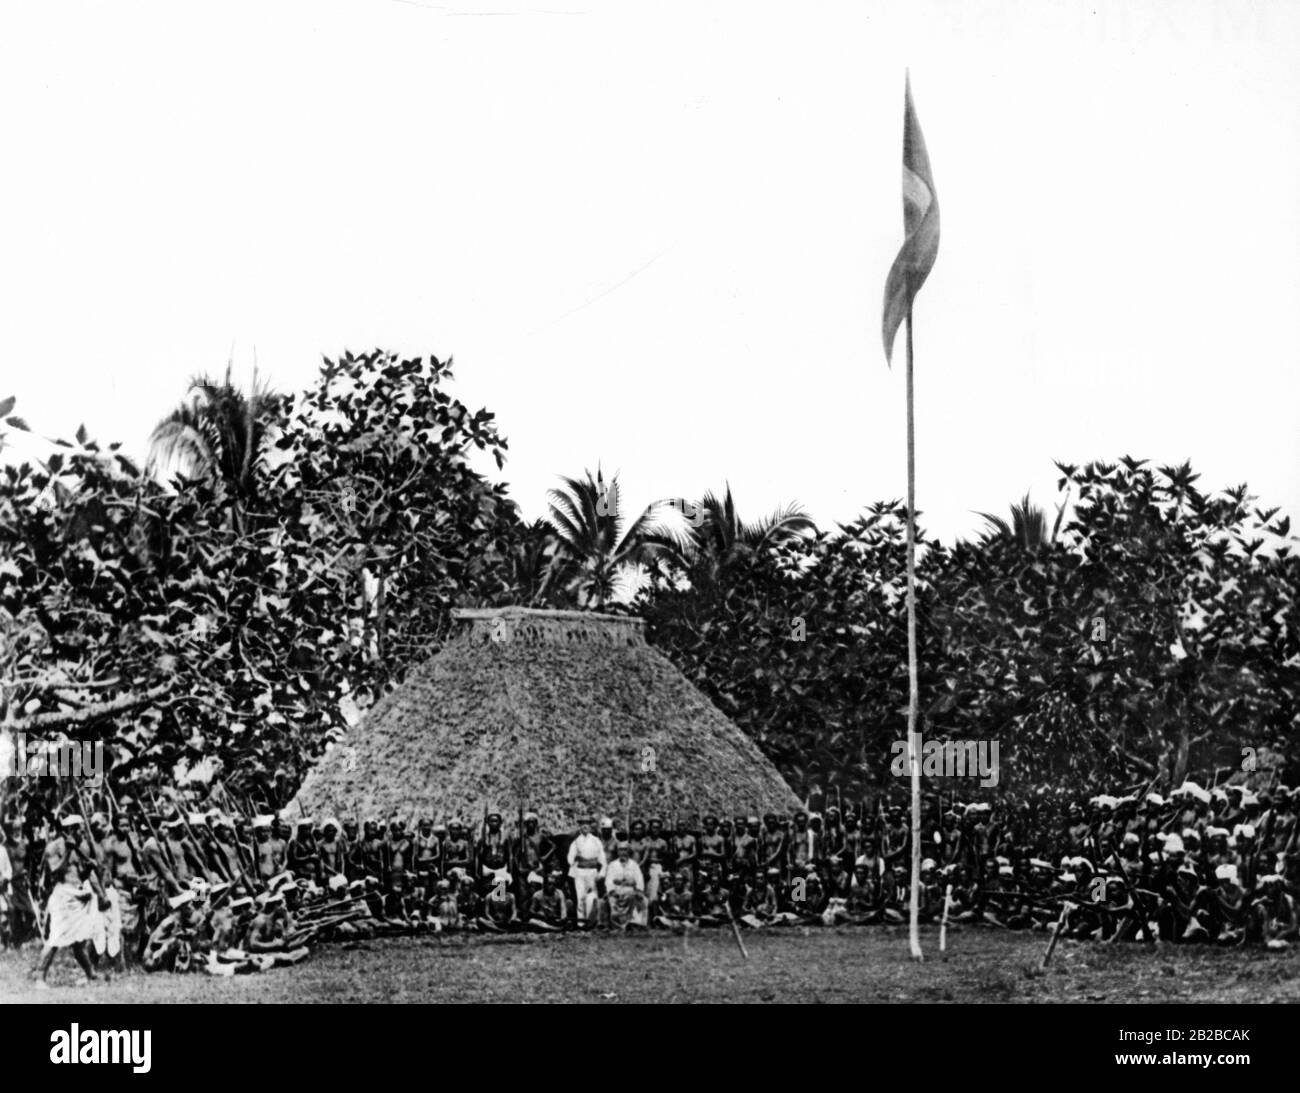 Matafa capo con entourage e guardia del corpo di fronte alla sua capanna nella colonia tedesca di Samoa. (Immagine non ondulata). Foto Stock